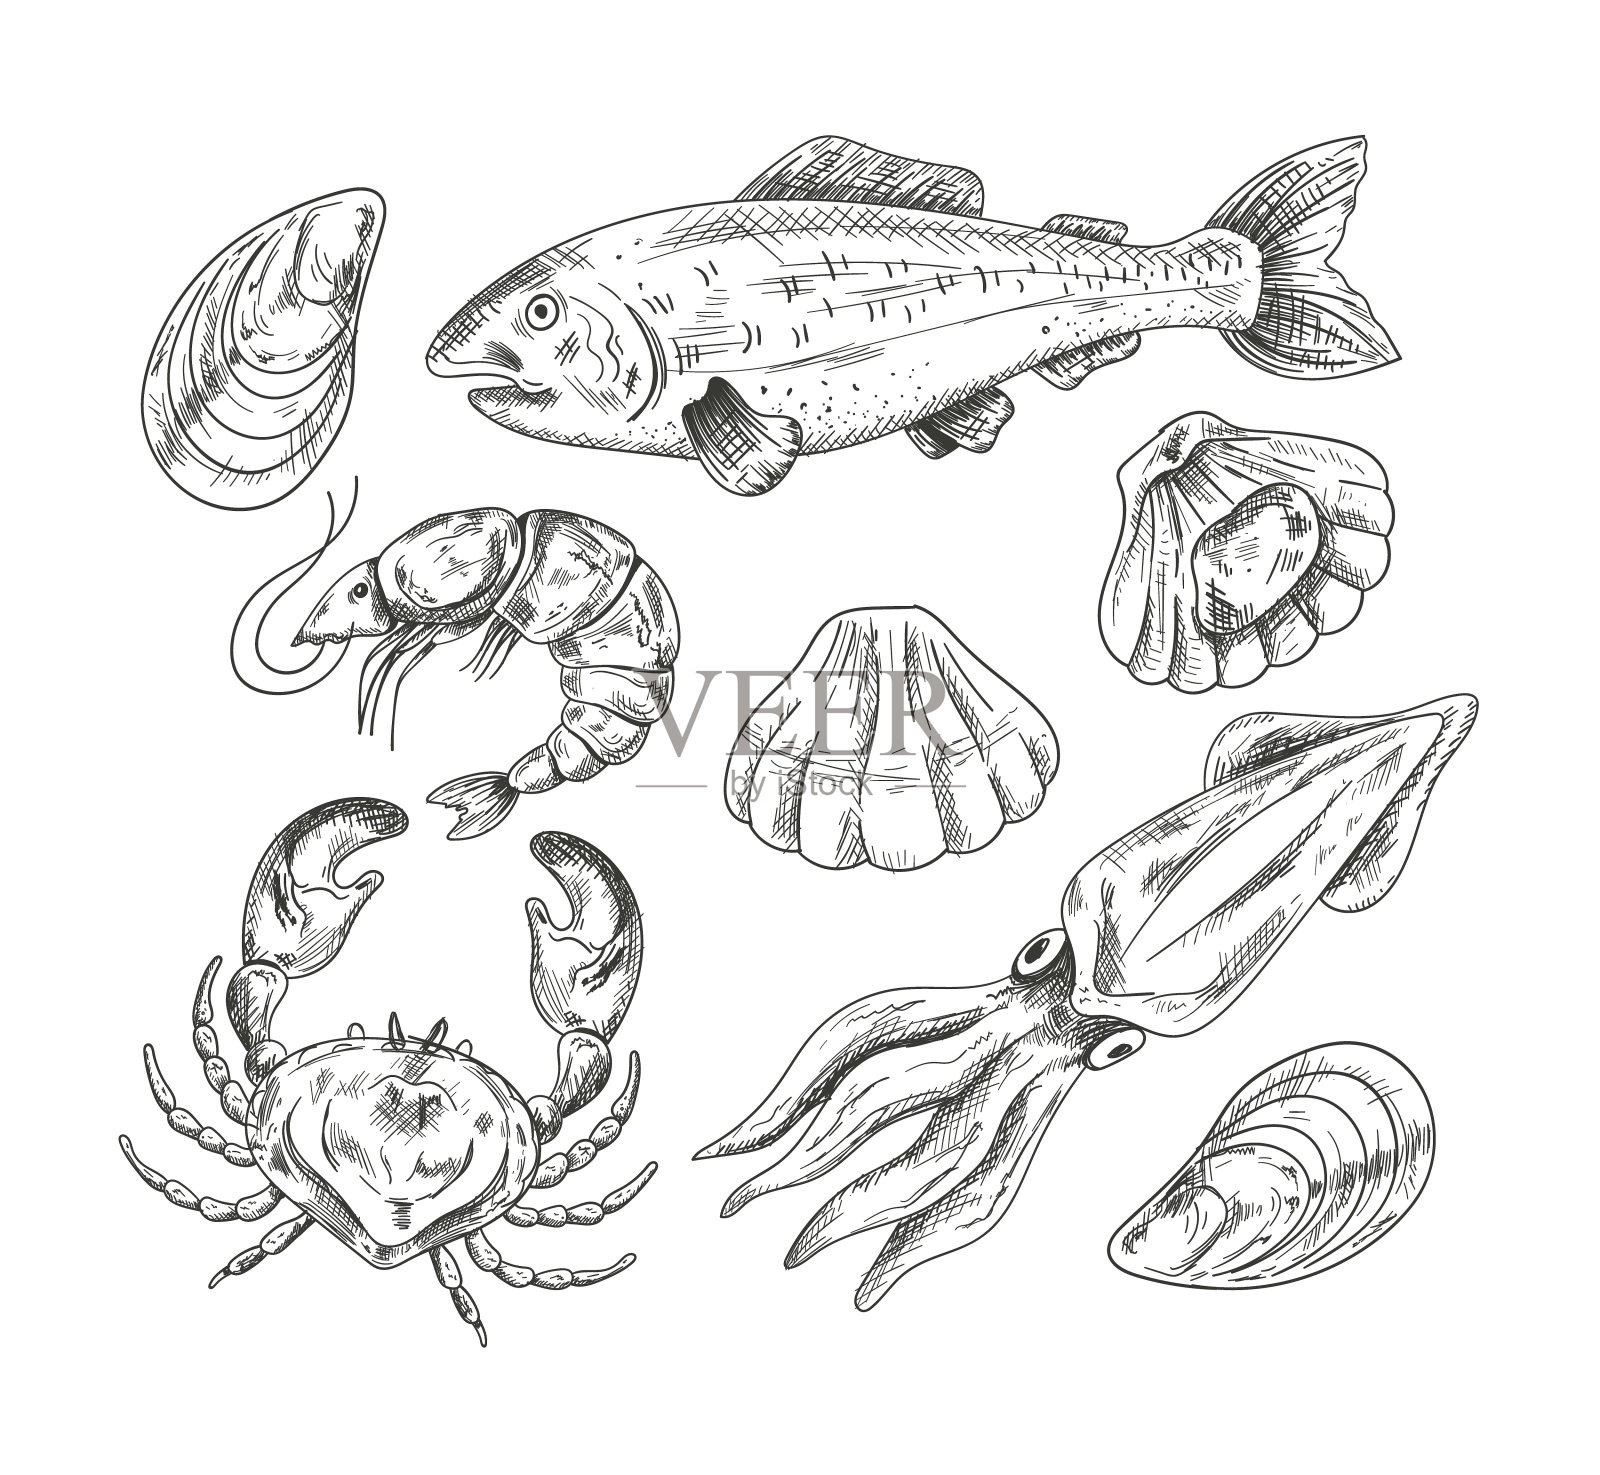 螃蟹素描套装。 手工绘制的海鲜集合。 不同螃蟹的矢量插图. 库存矢量图（免版税）674264911